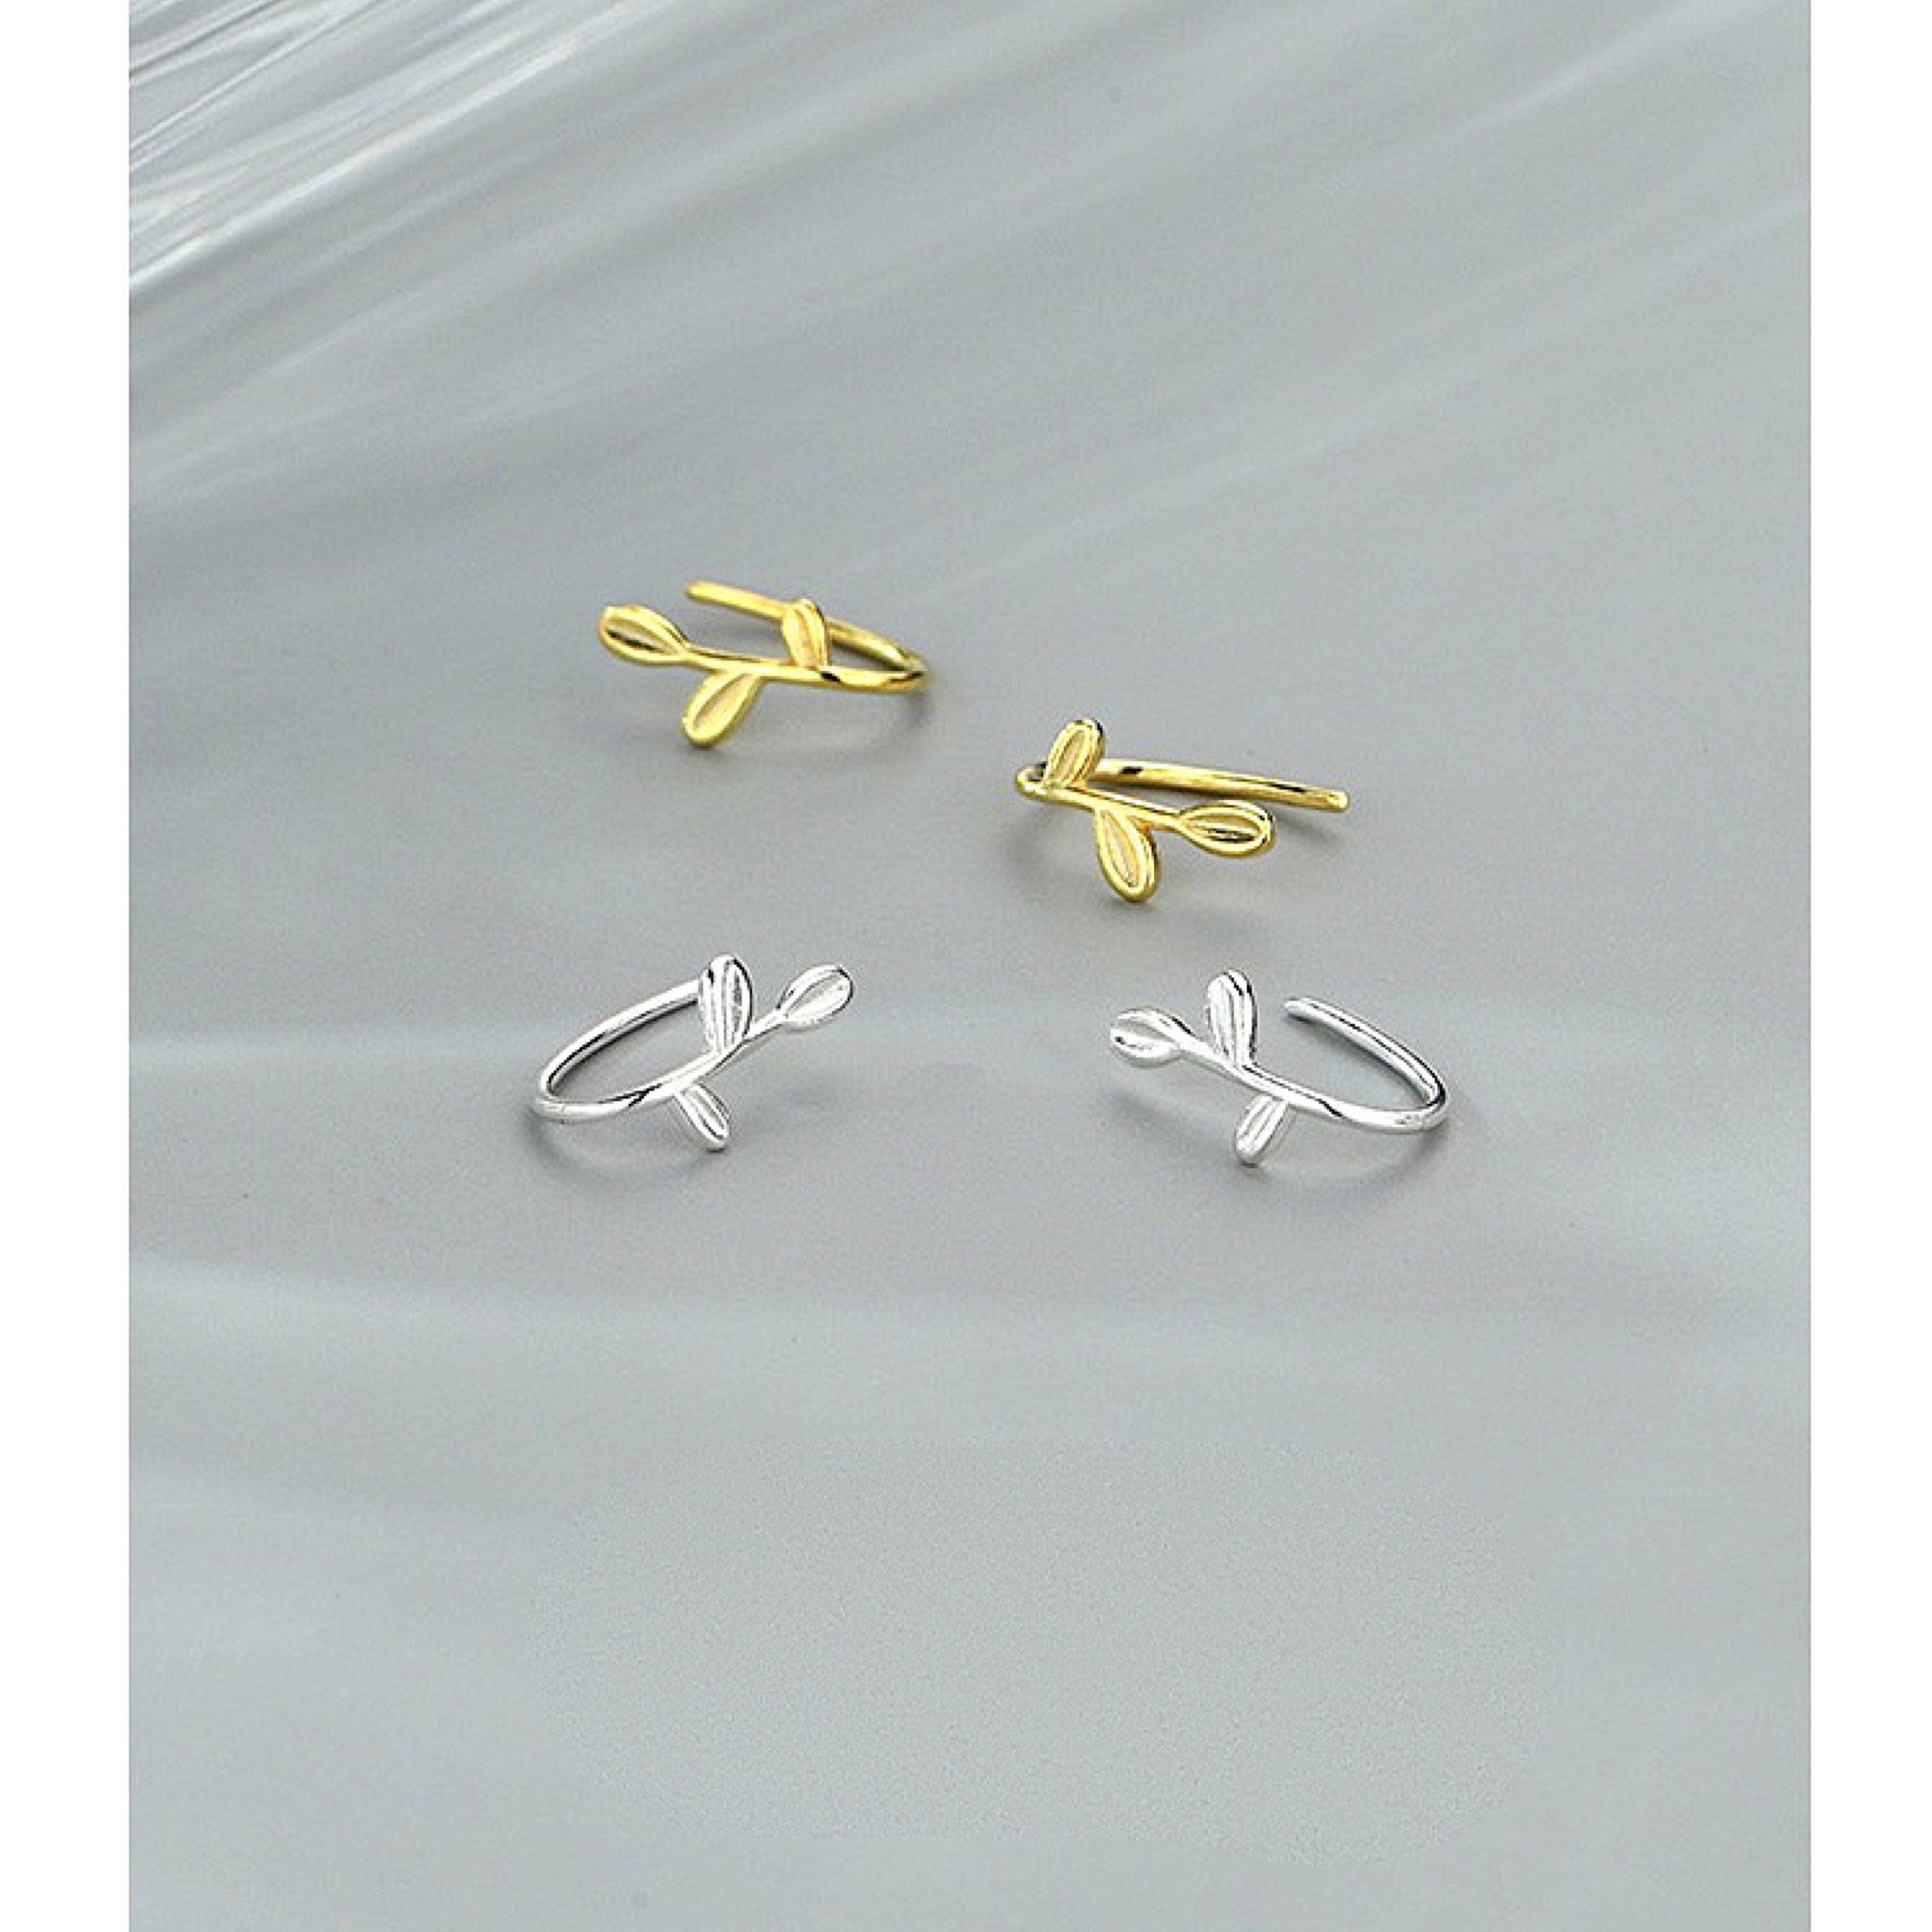 Sterling Silver Gold Leaf Threader Earrings, Gold Dainty Open Hoop Earrings, Hook Earrings, Horseshoe Hoop Earrings, Gift For Her, S925 LATUKI 